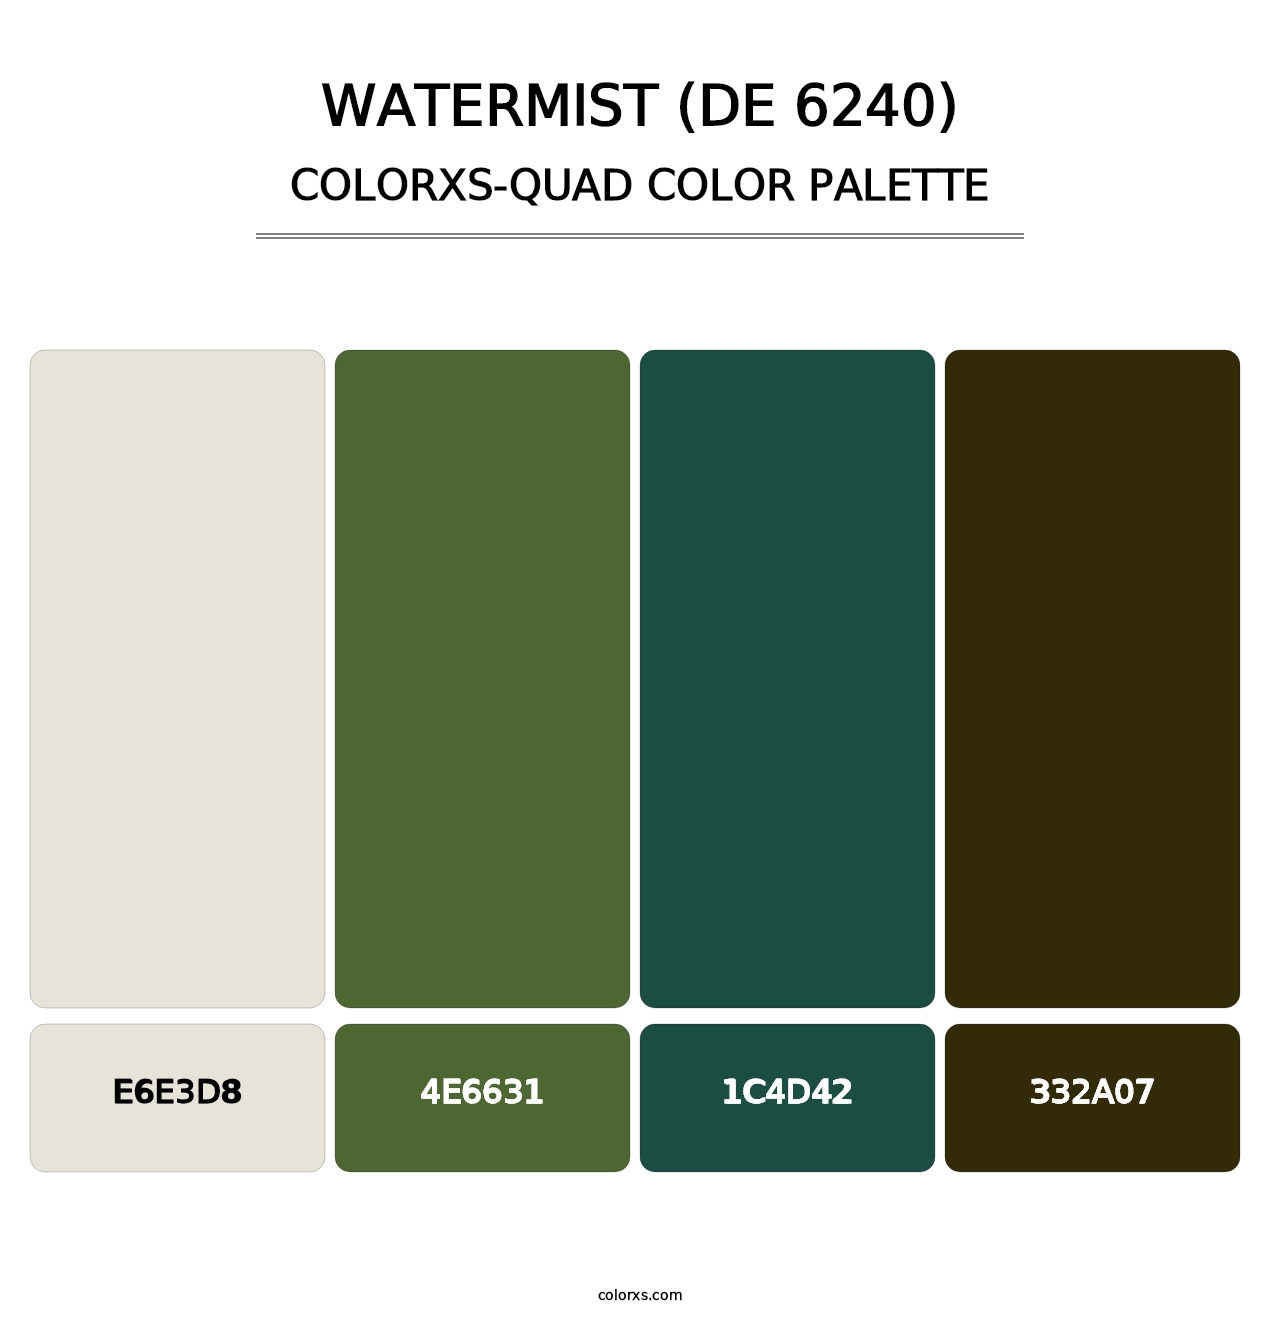 Watermist (DE 6240) - Colorxs Quad Palette